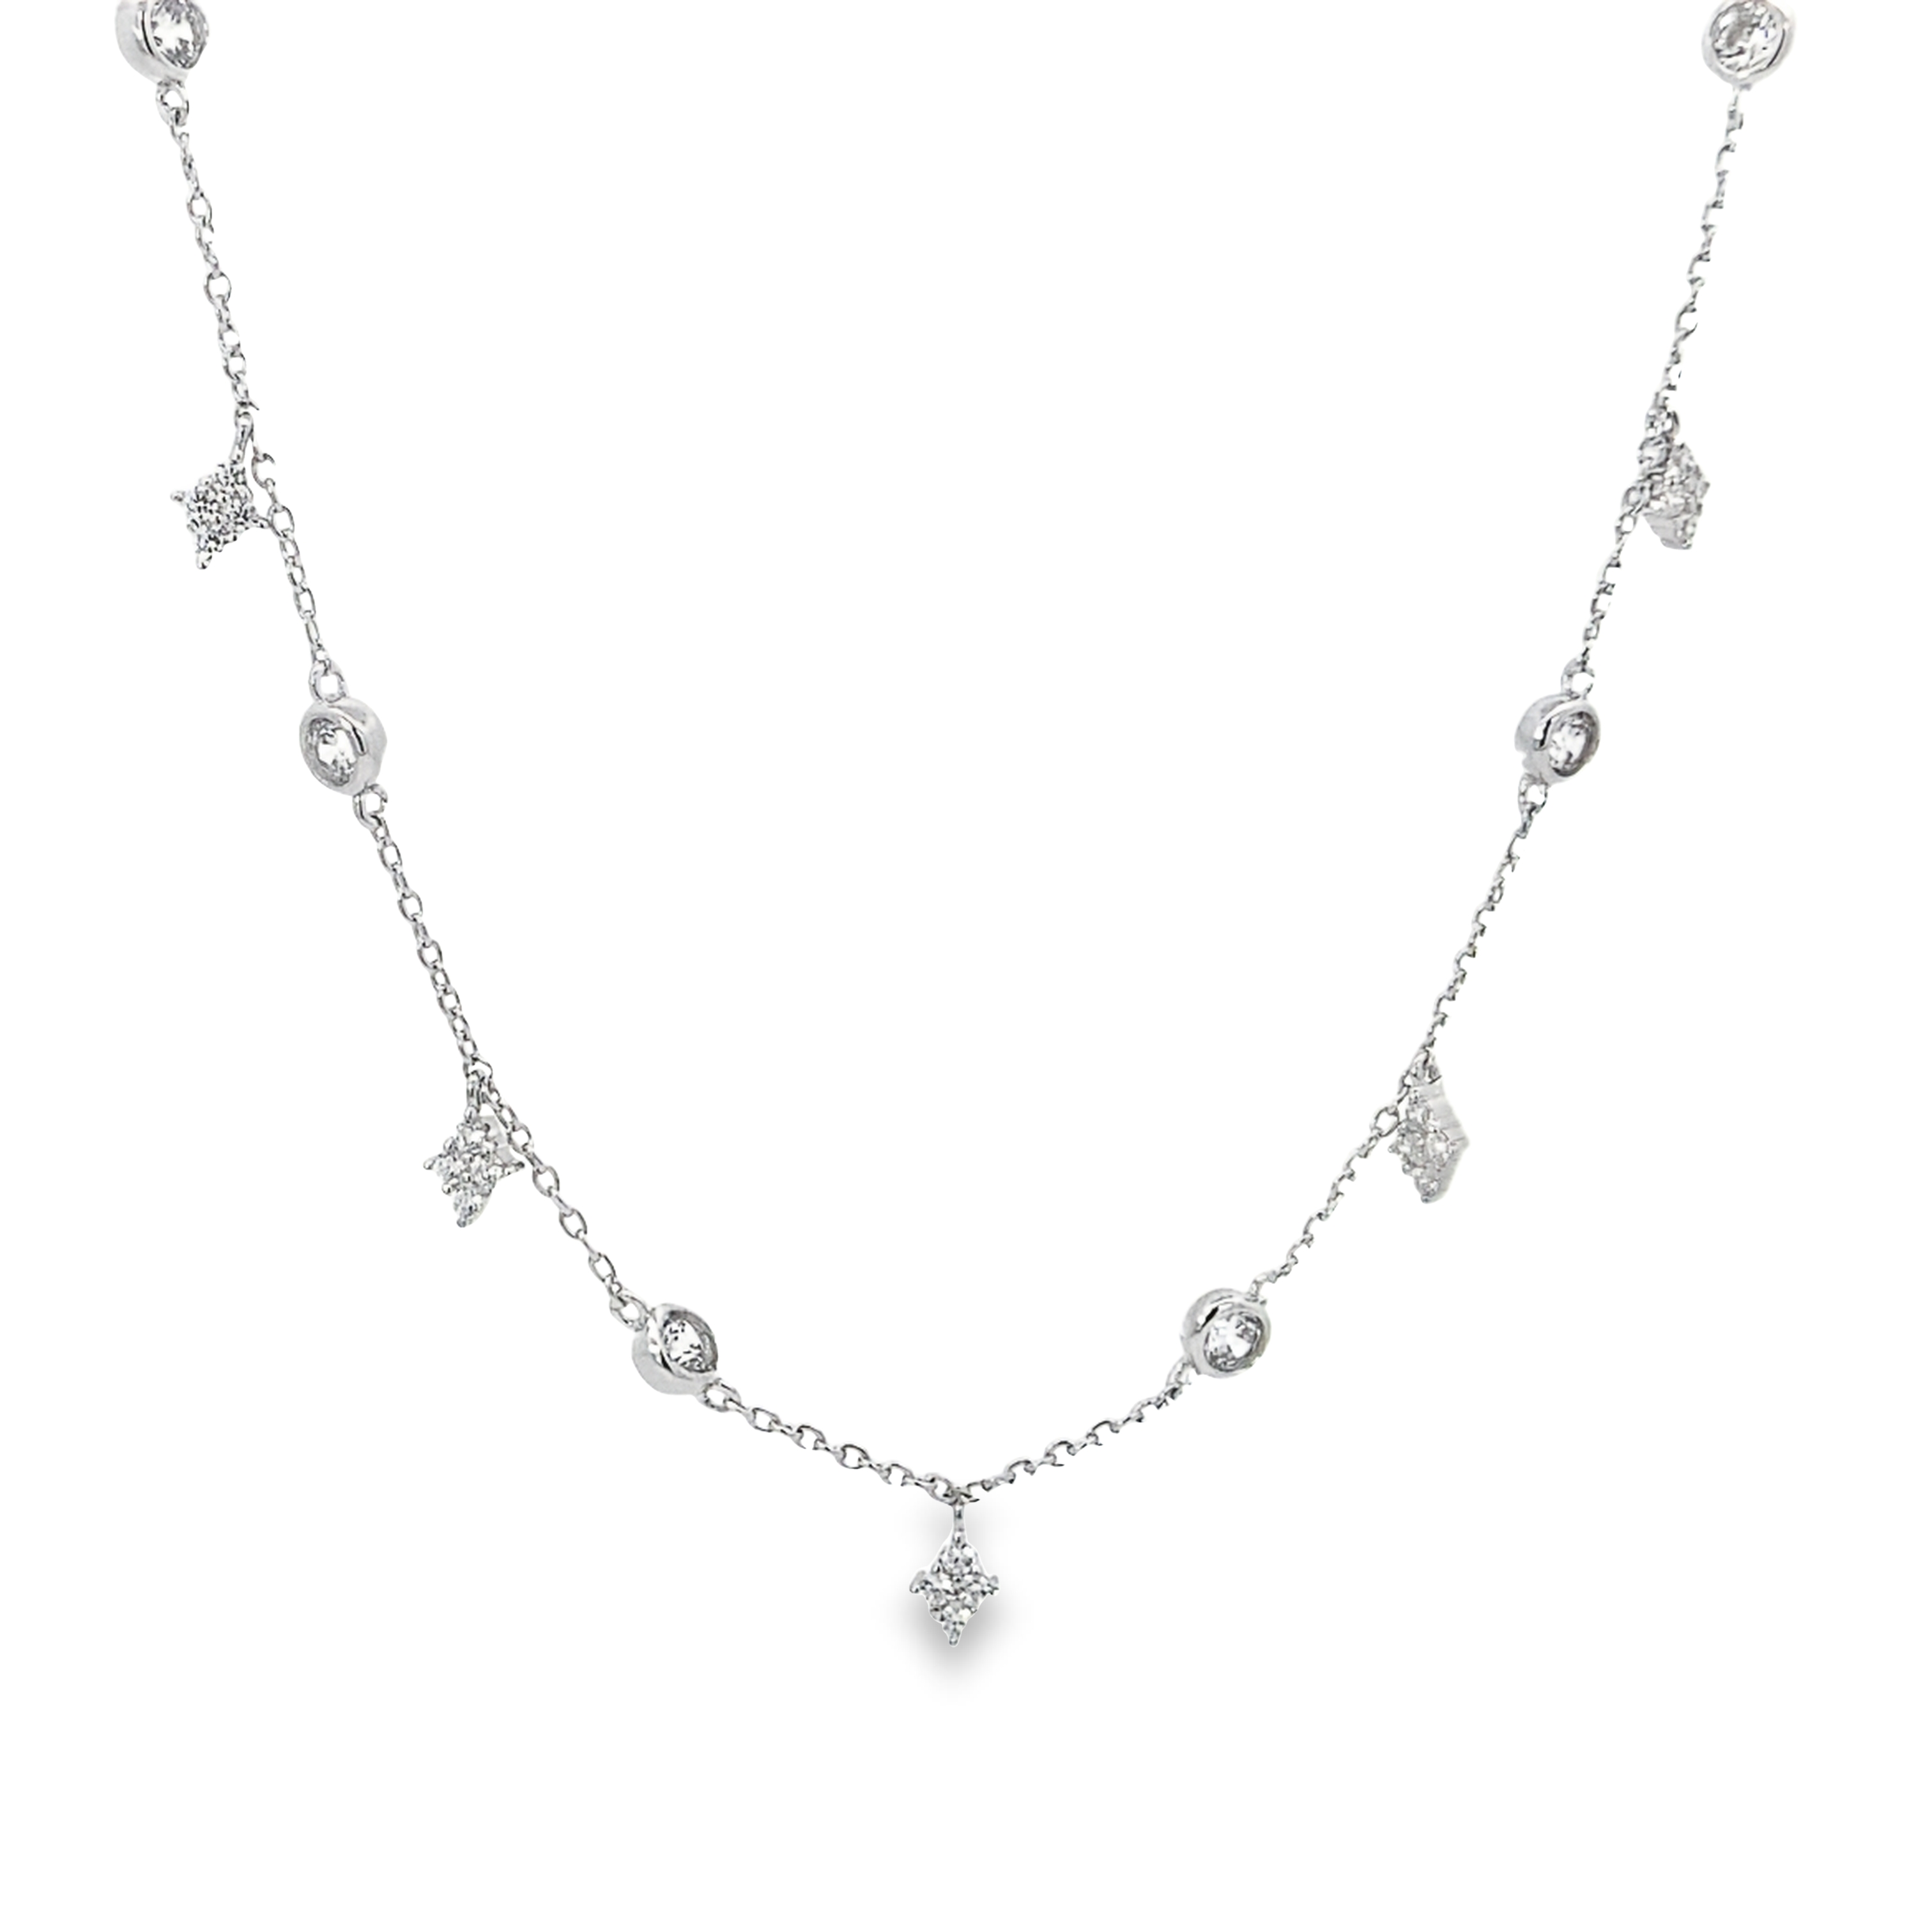 Polar Charms Silver Necklace